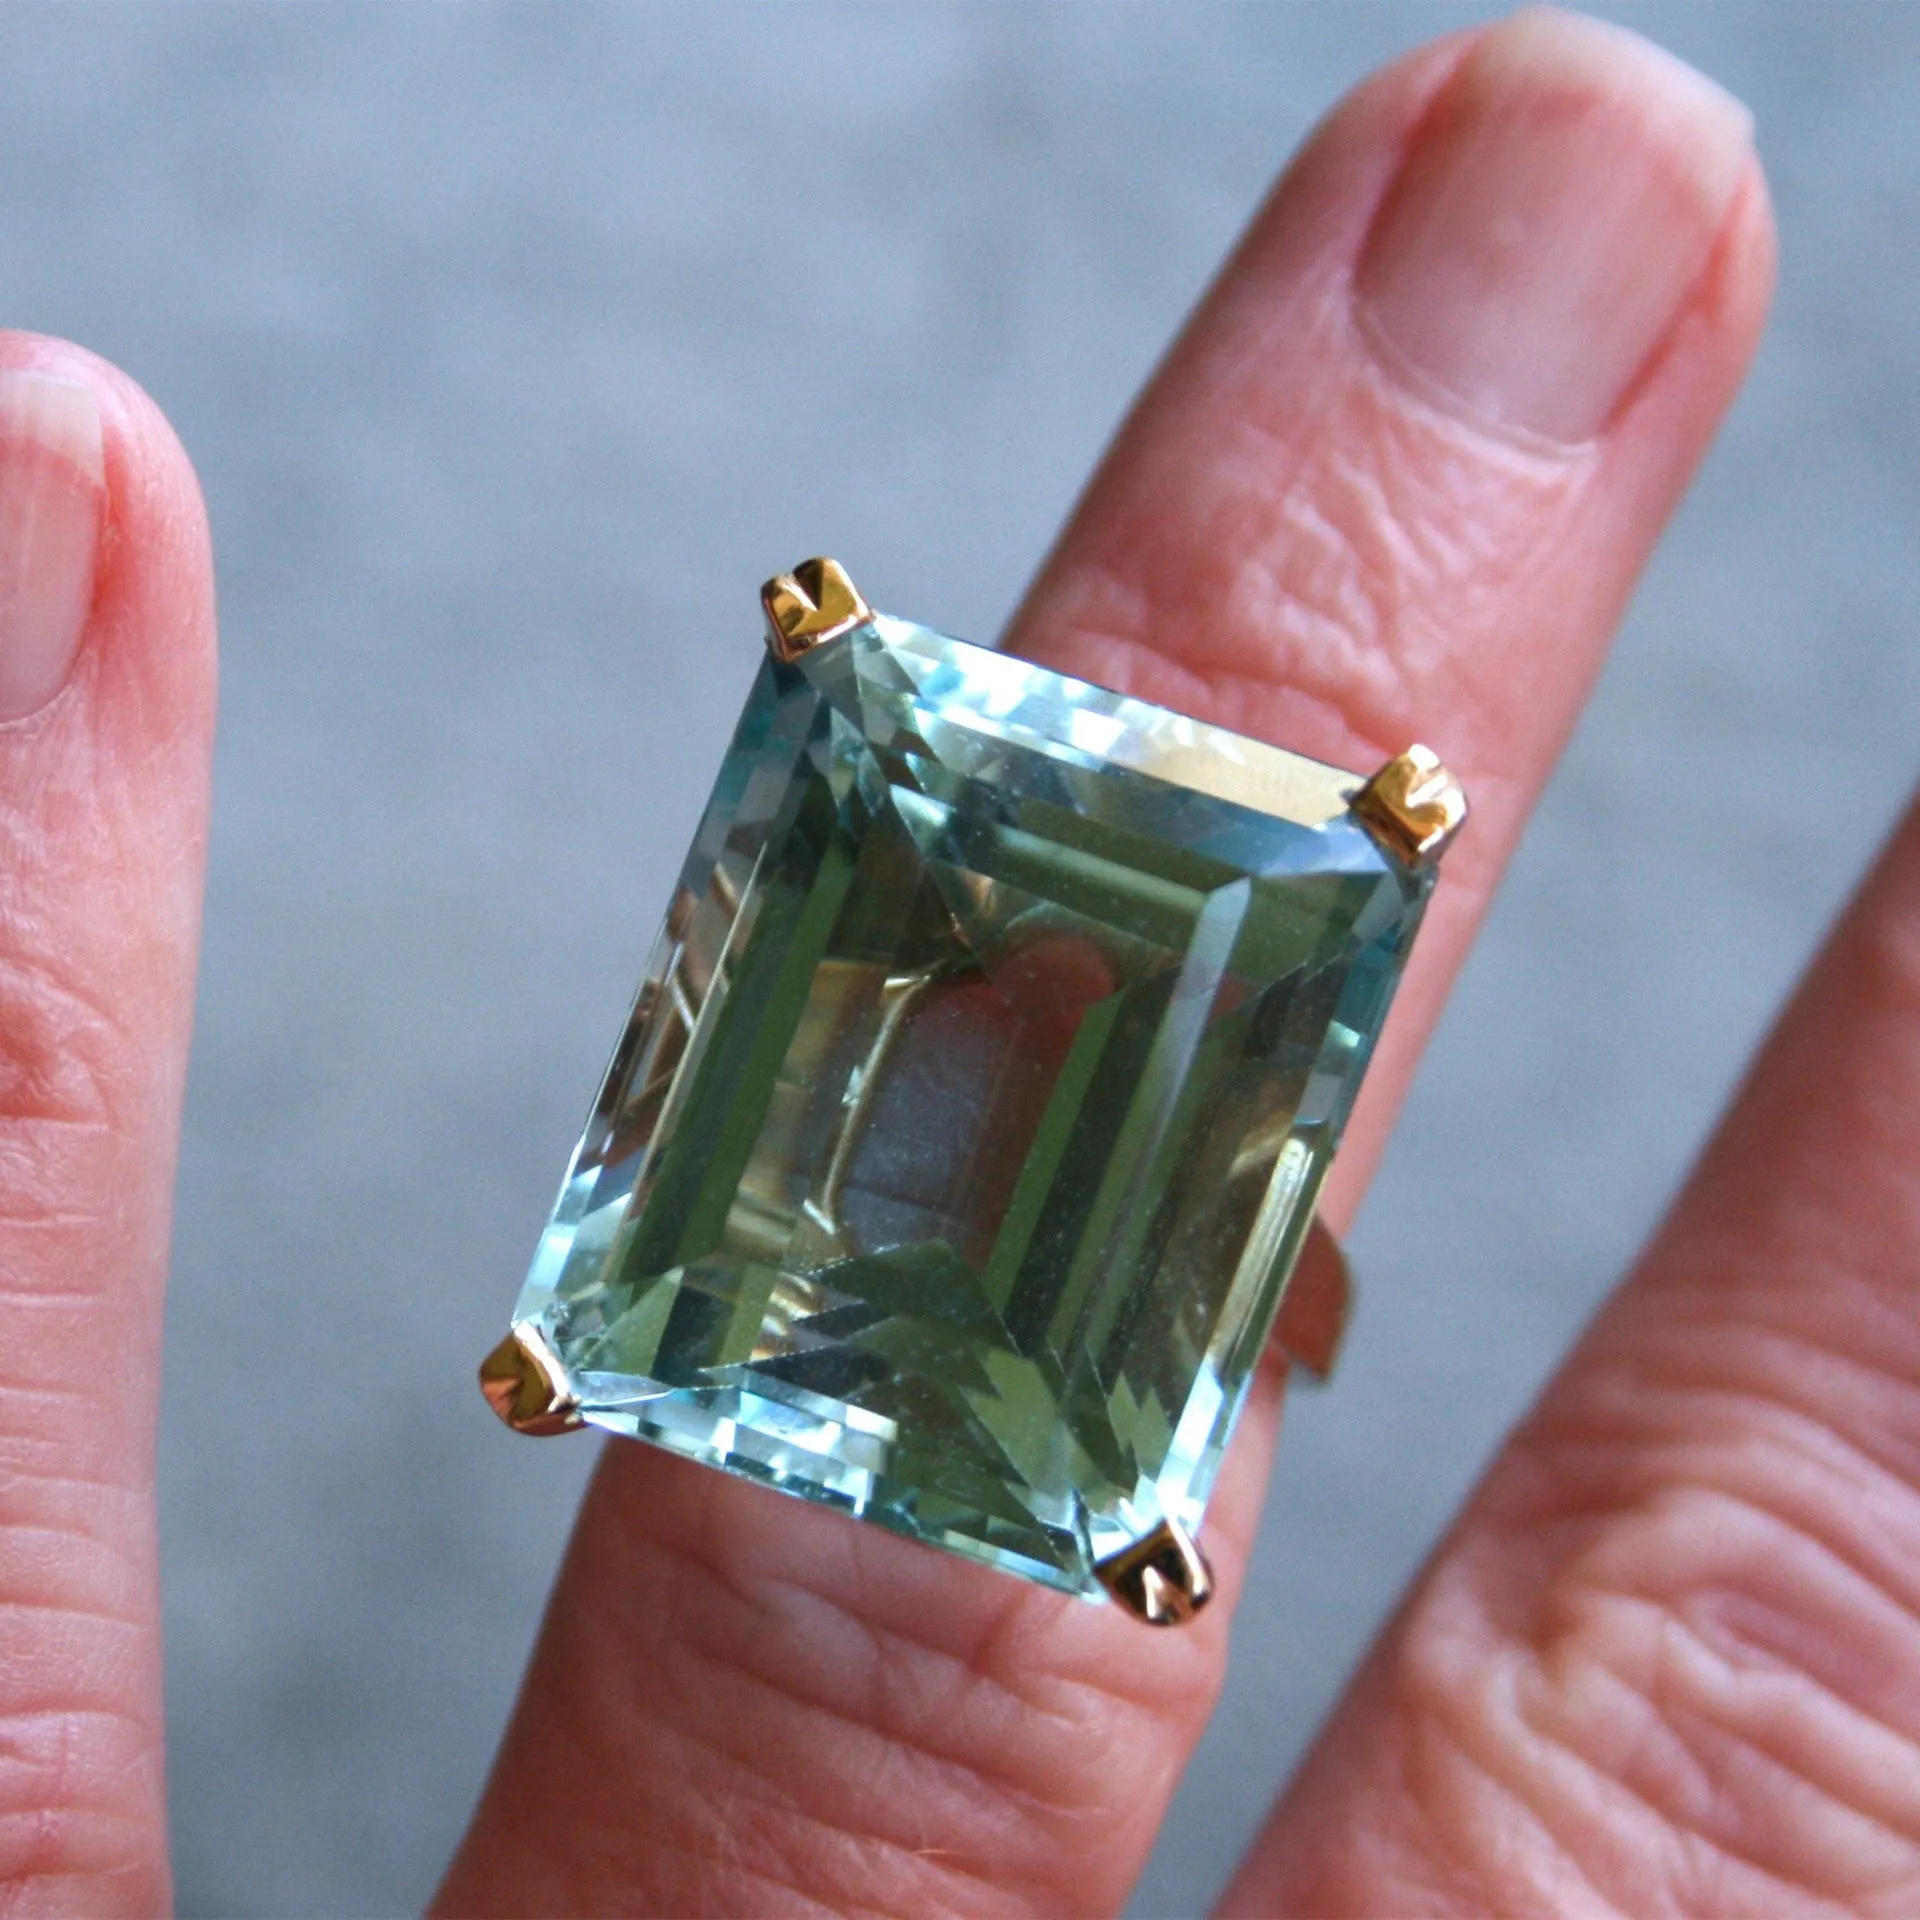 Sea Blue Topaz Stone Princess Diamond Ring Engagement Sapphire Ring 14K Gold Anillos för kvinnor Bizuteria Jade Diamond Smycken 201006